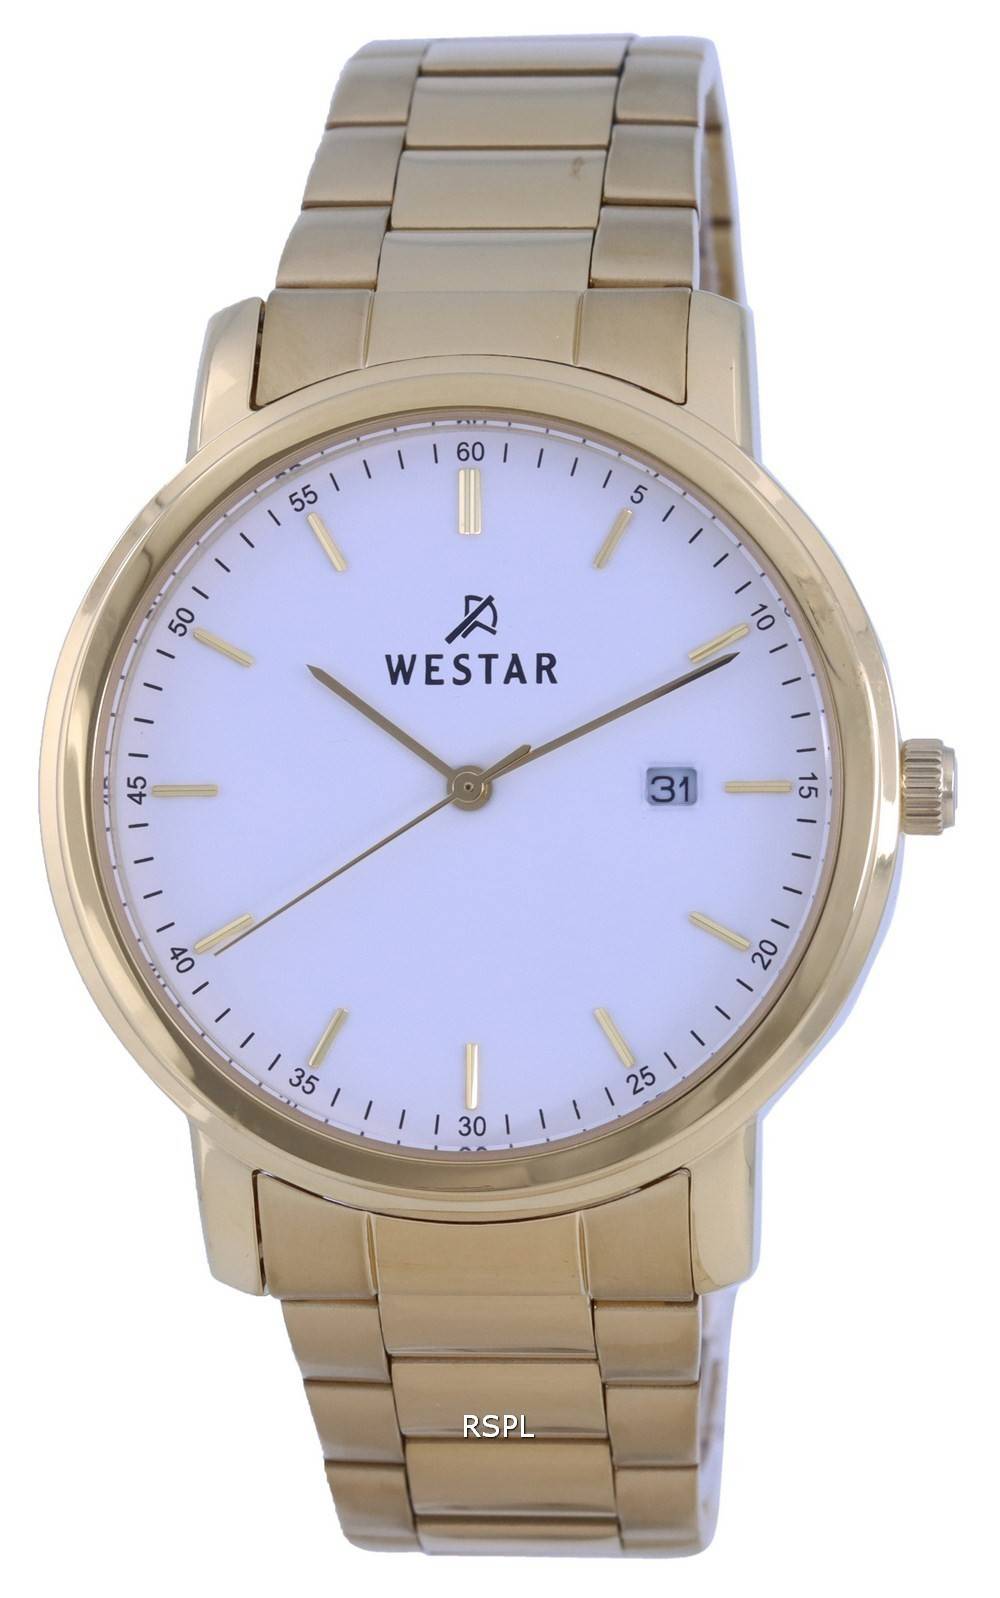 Westar 화이트 다이얼 골드 톤 스테인레스 스틸 쿼츠 50243 GPN 101 남성용 시계